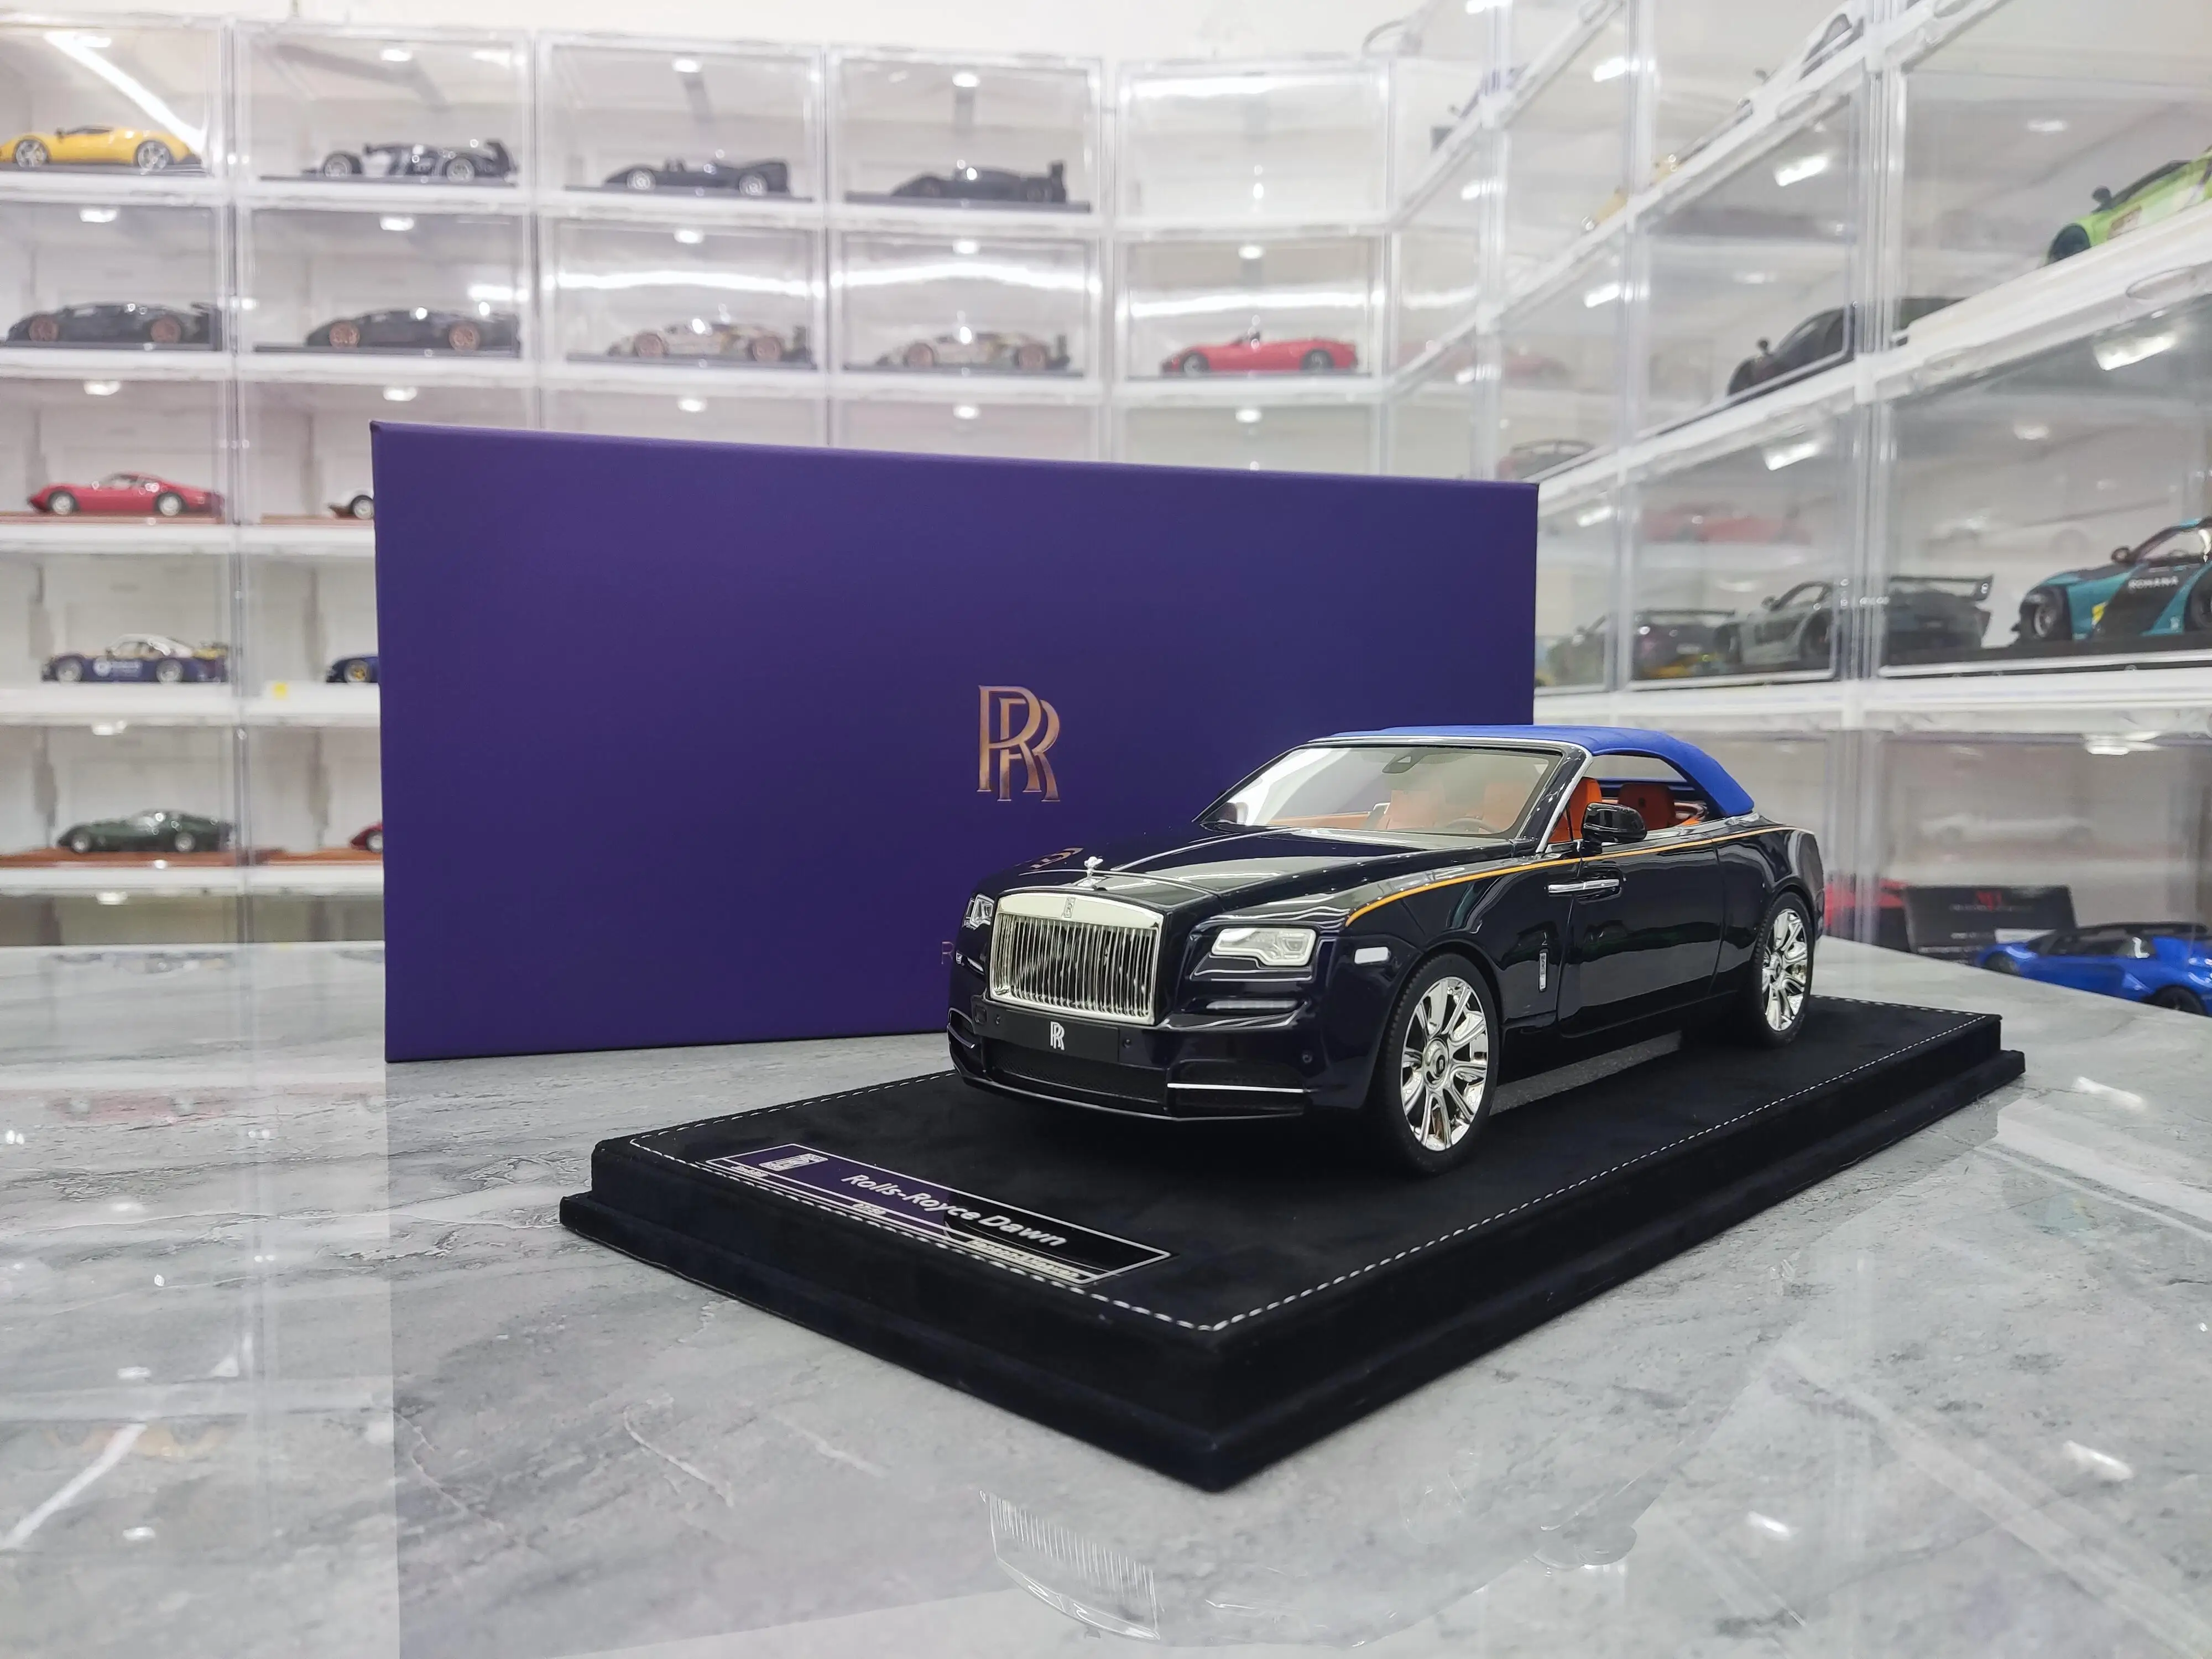 Модель автомобиля HH 1/18, изготовленная под заказ, 2022 Rolls-Royce Dawn, ограниченная серия, имитационная модель автомобиля с оригинальной коробкой 5